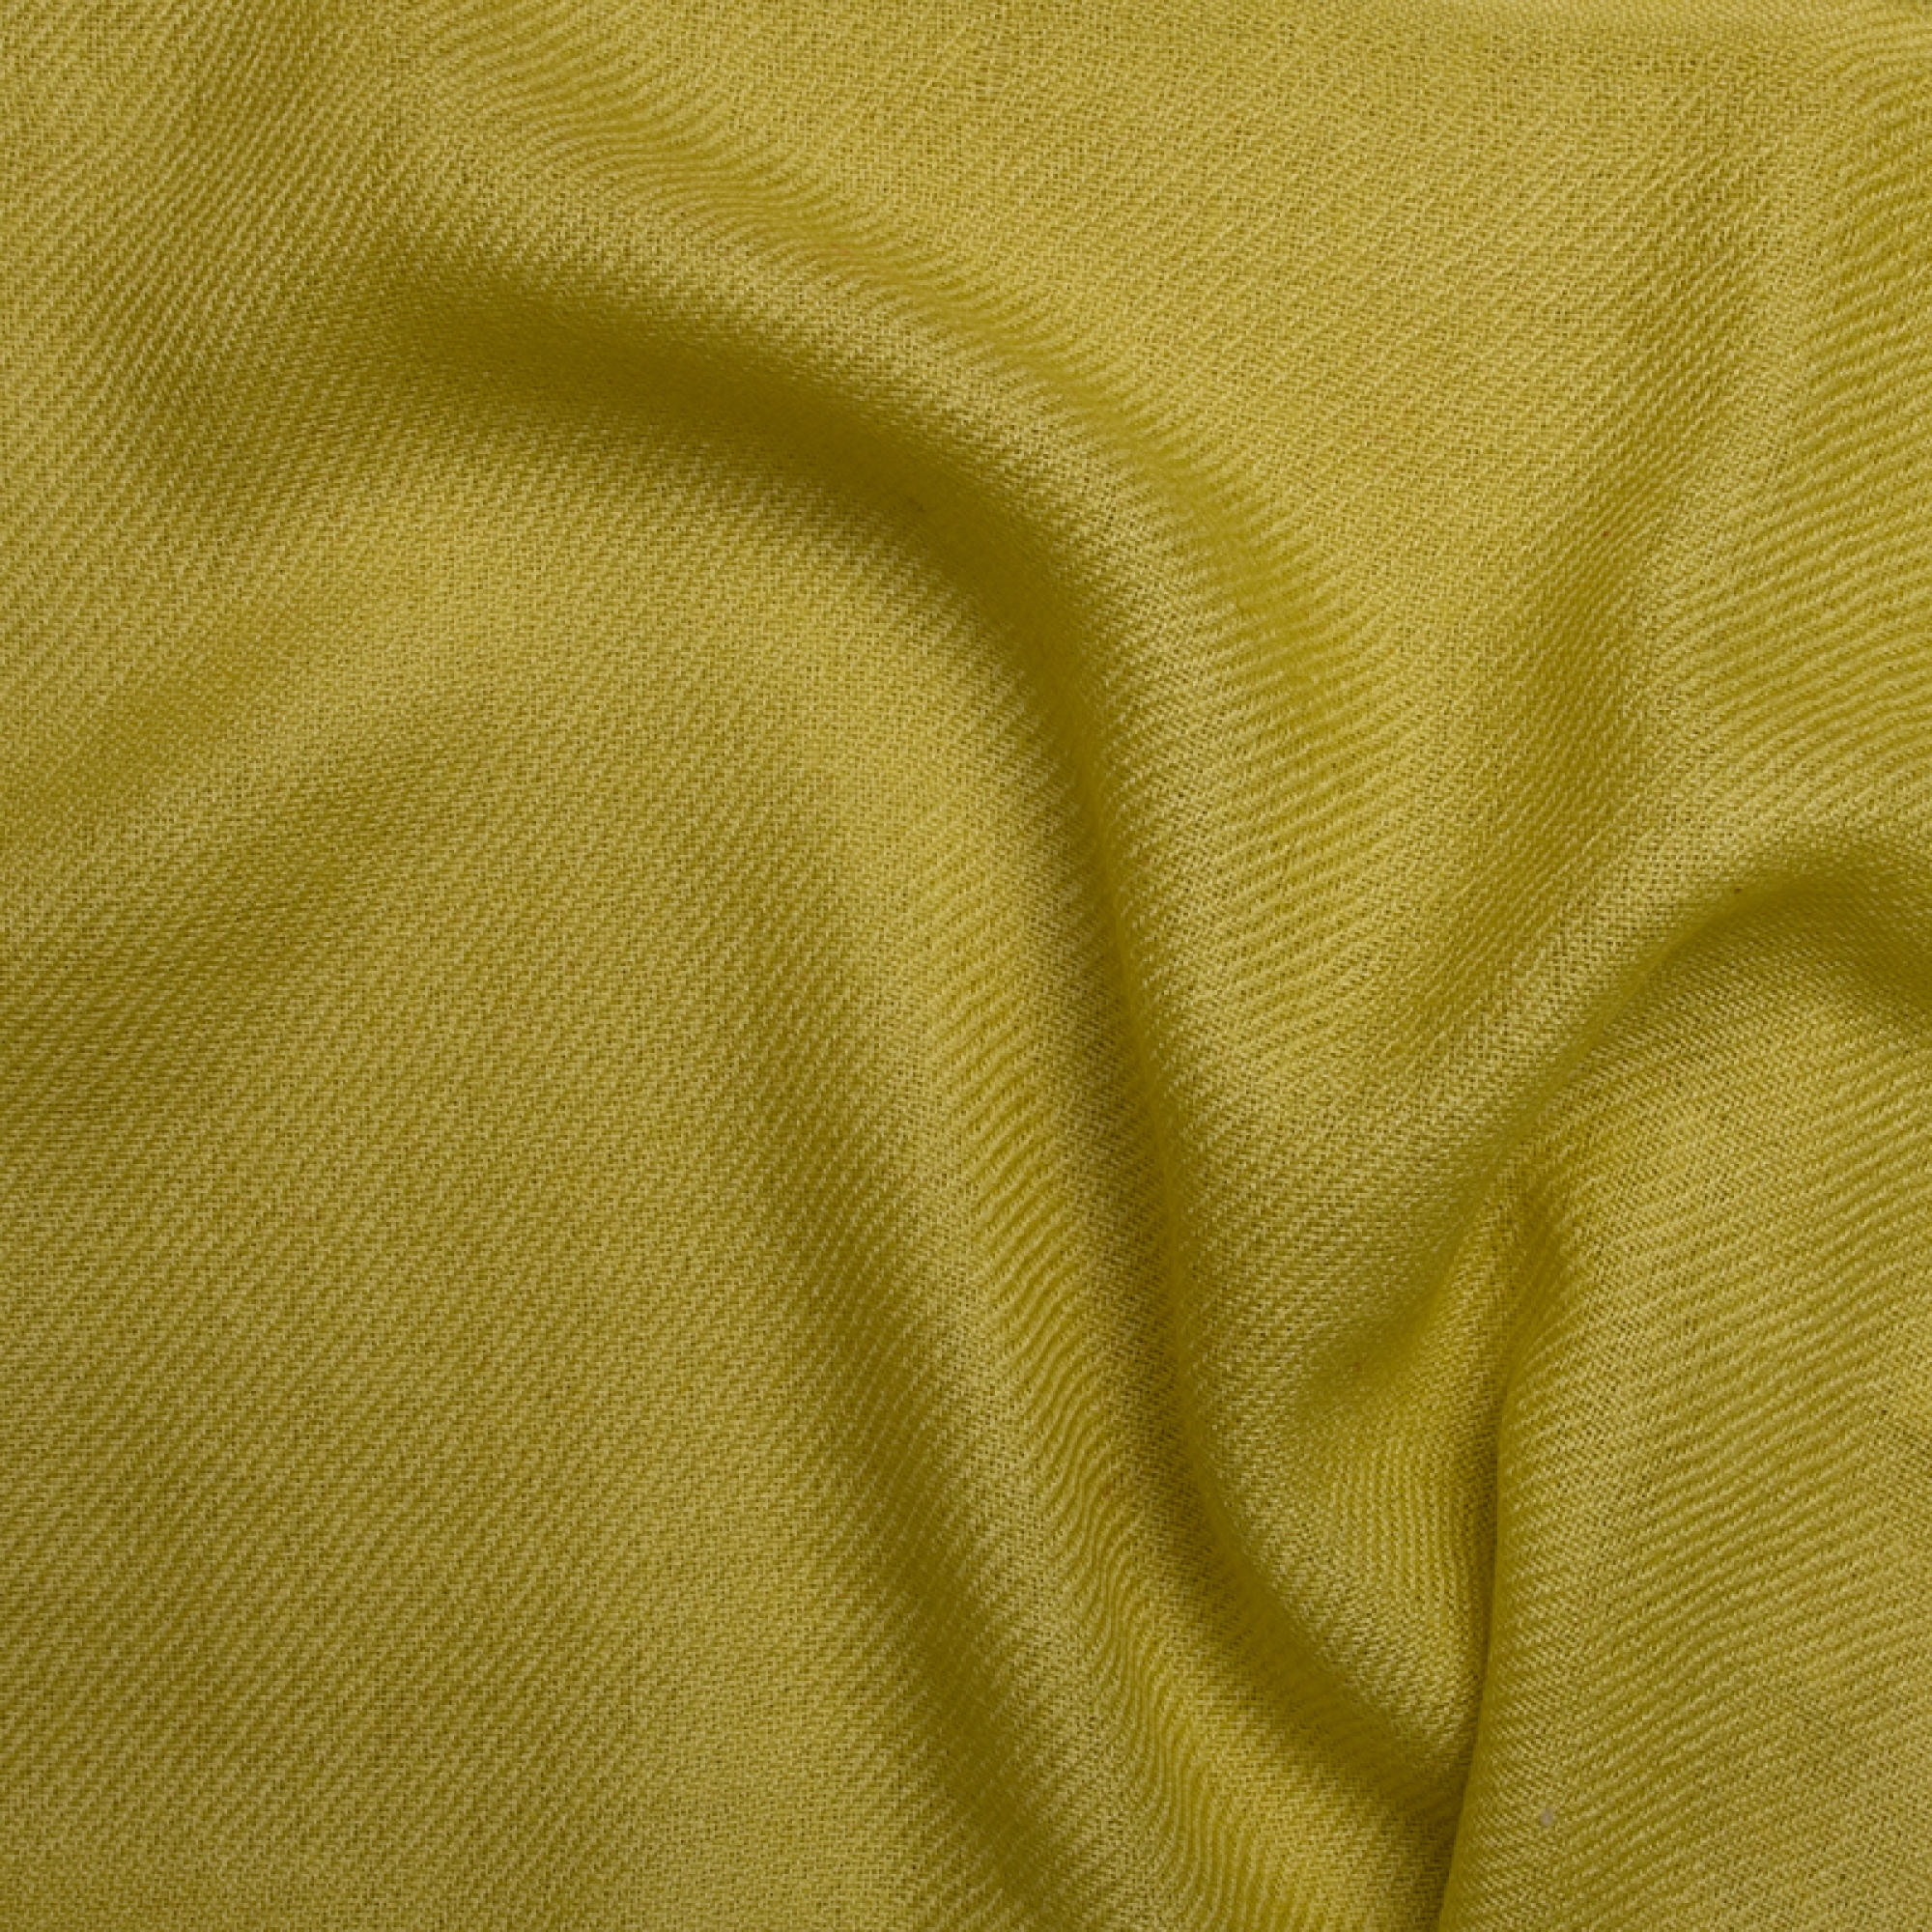 Cachemire accessoires couvertures plaids toodoo plain s 140 x 200 vert chantant 140 x 200 cm